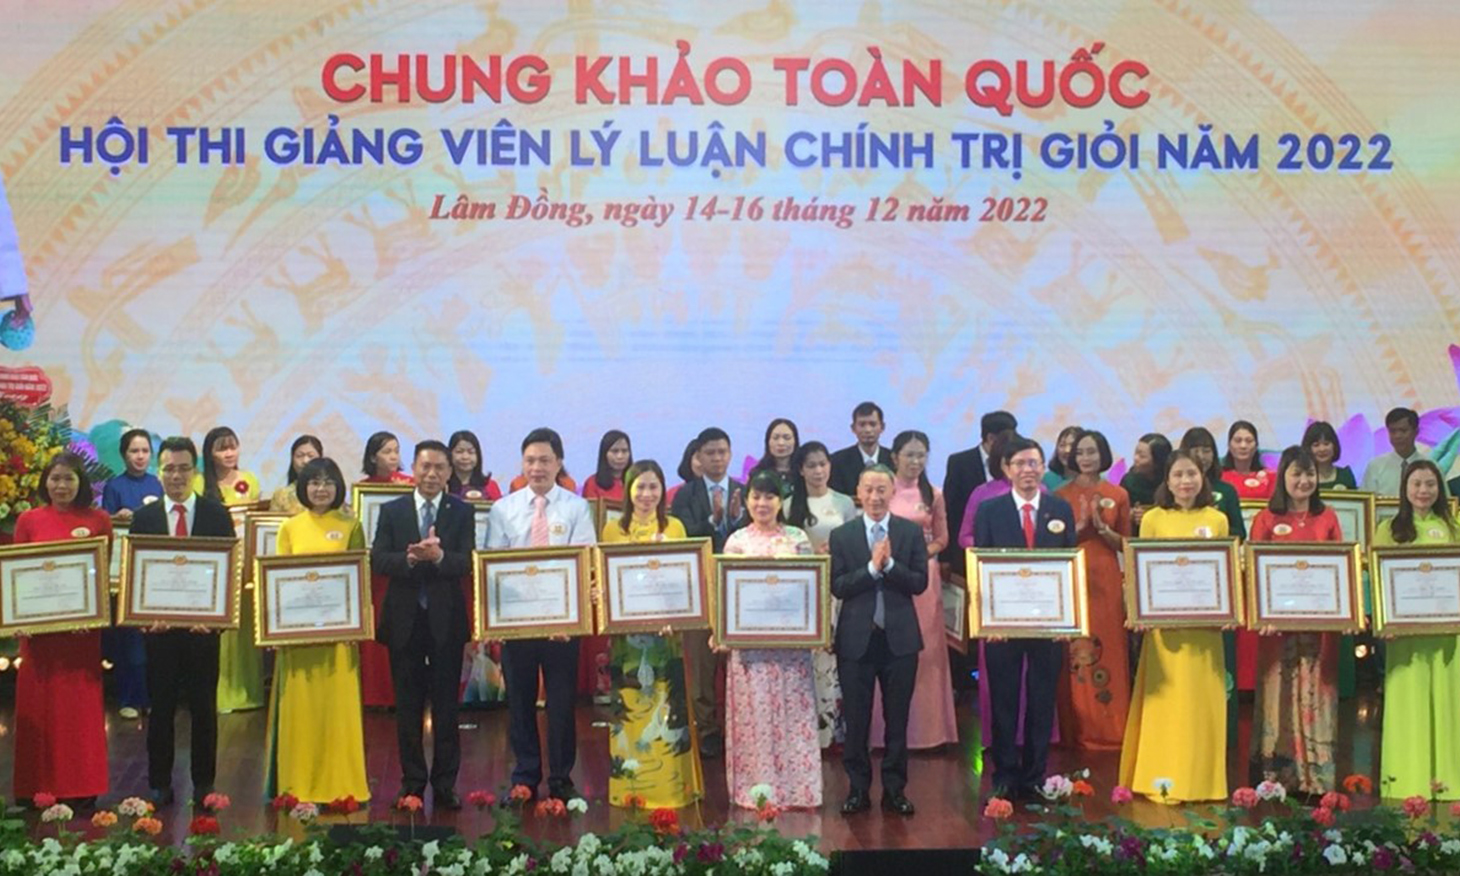 Thí sinh Quảng Bình đoạt giải ba hội thi giảng viên lý luận chính trị giỏi toàn quốc